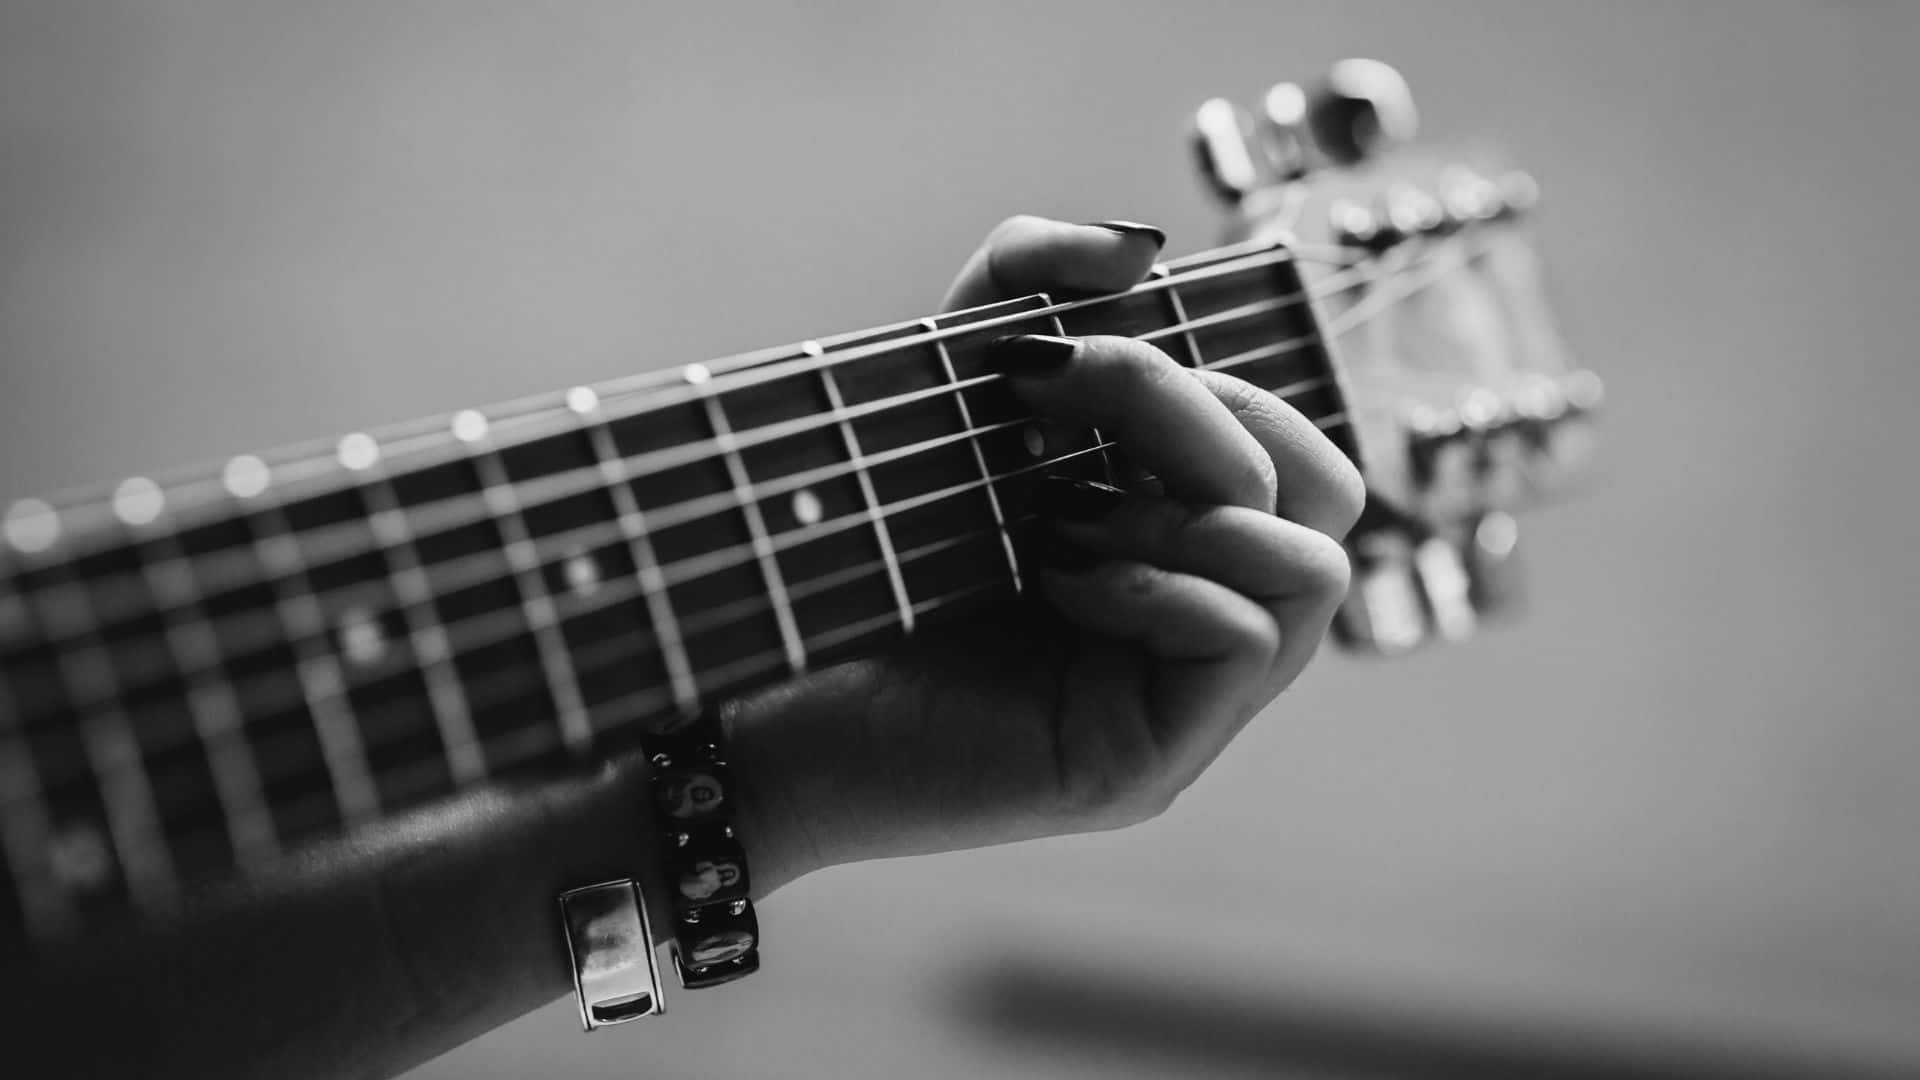 Artede Pared De Guitarra En Blanco Y Negro. Fondo de pantalla